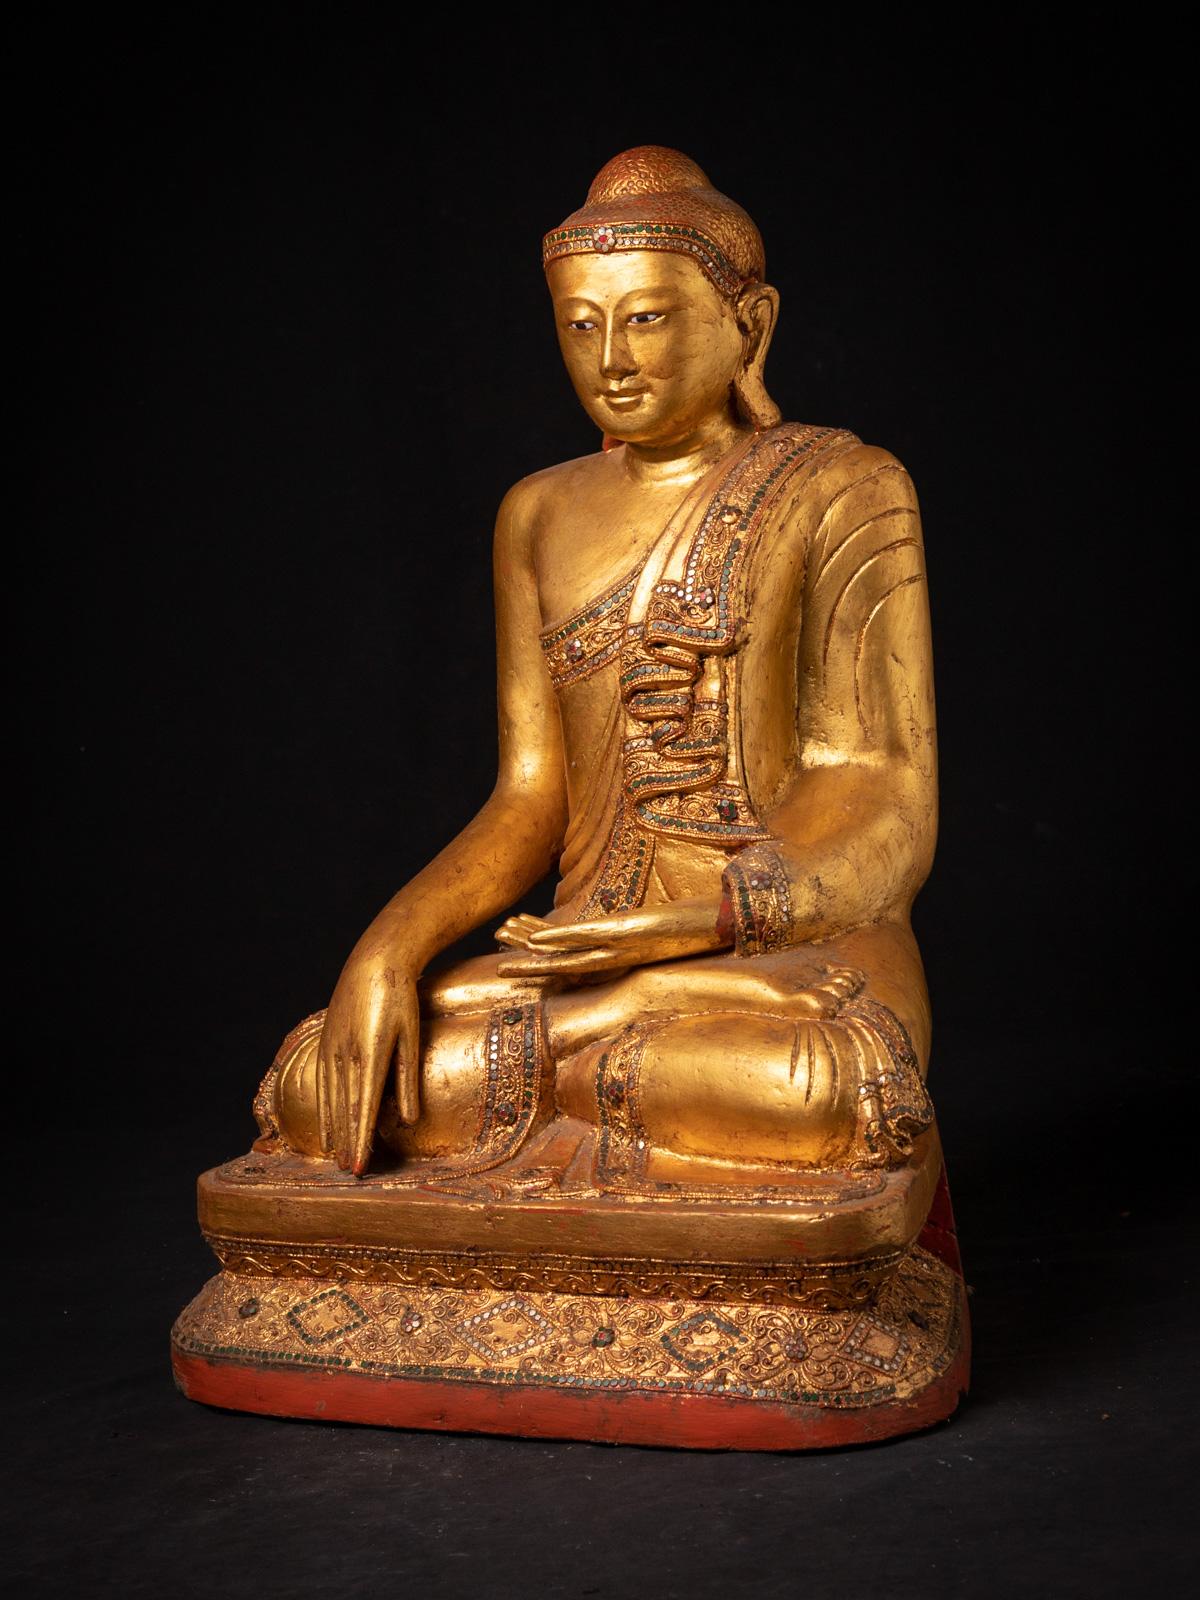 La vieille statue de Bouddha de Mandalay en bois de Birmanie est une magnifique représentation de l'artisanat artistique et spirituel. Fabriquée en bois, cette statue mesure 66 cm de haut, pour une largeur de 44,5 cm et une profondeur de 34,5 cm. Sa